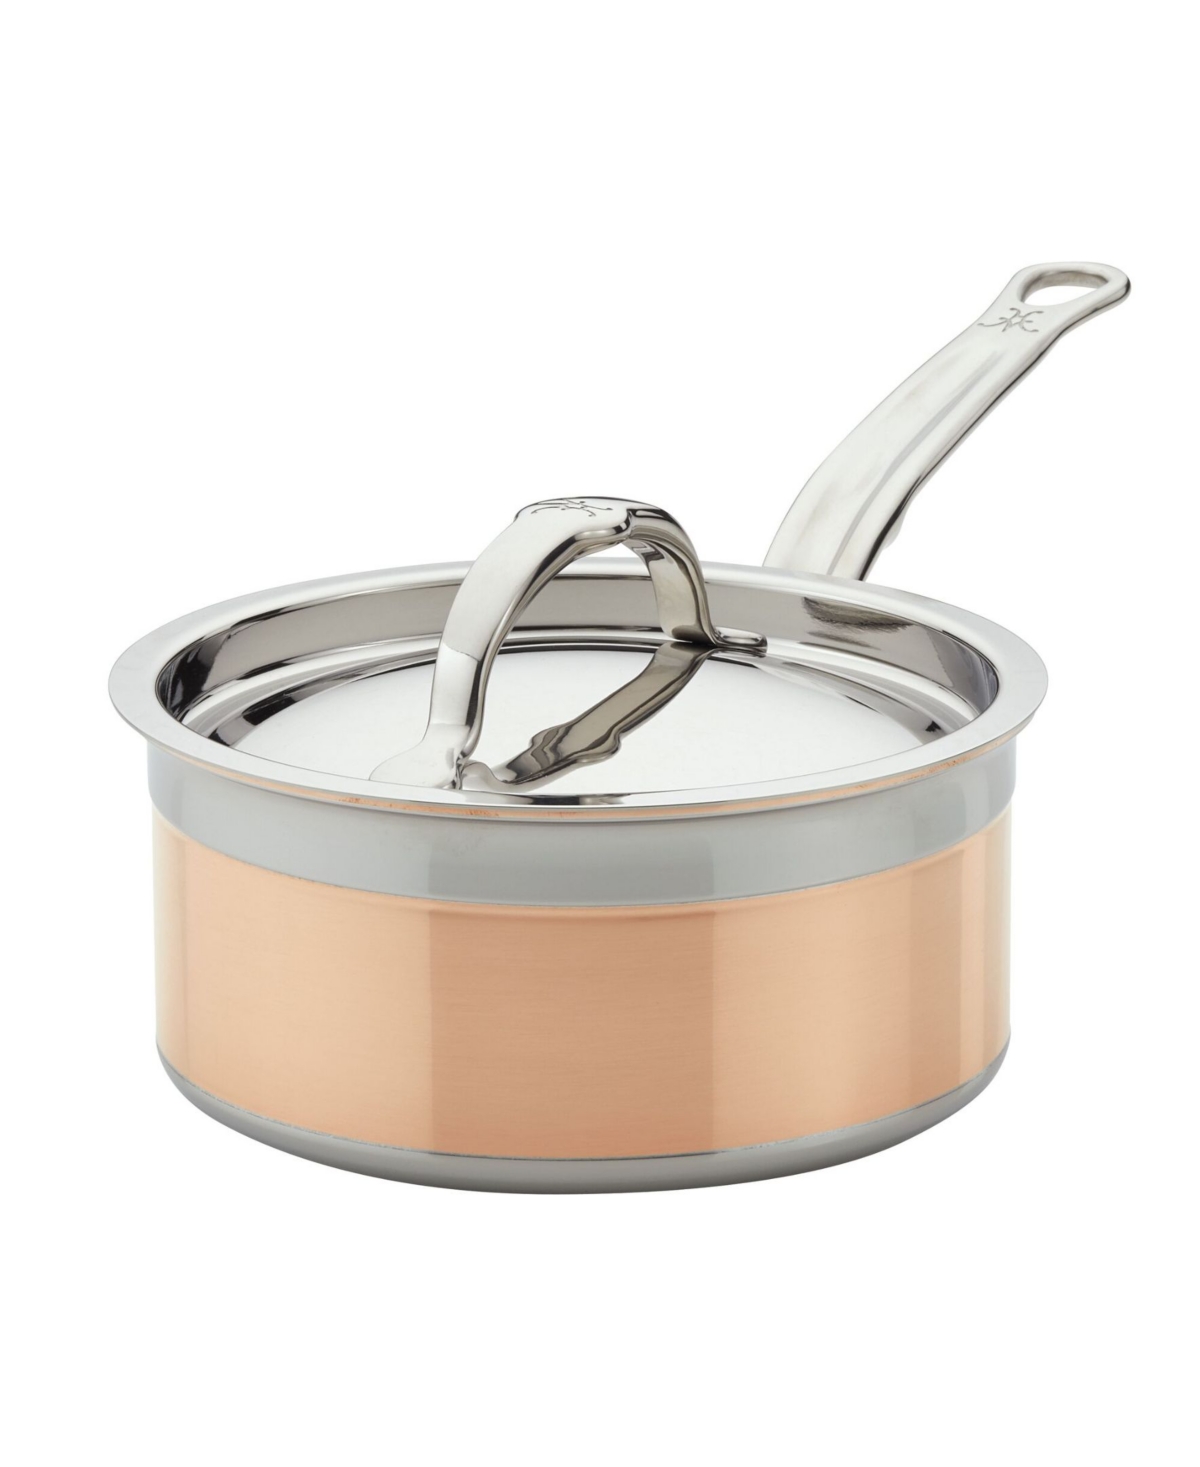 Shop Hestan Copperbond Copper Induction 1.5-quart Covered Saucepan